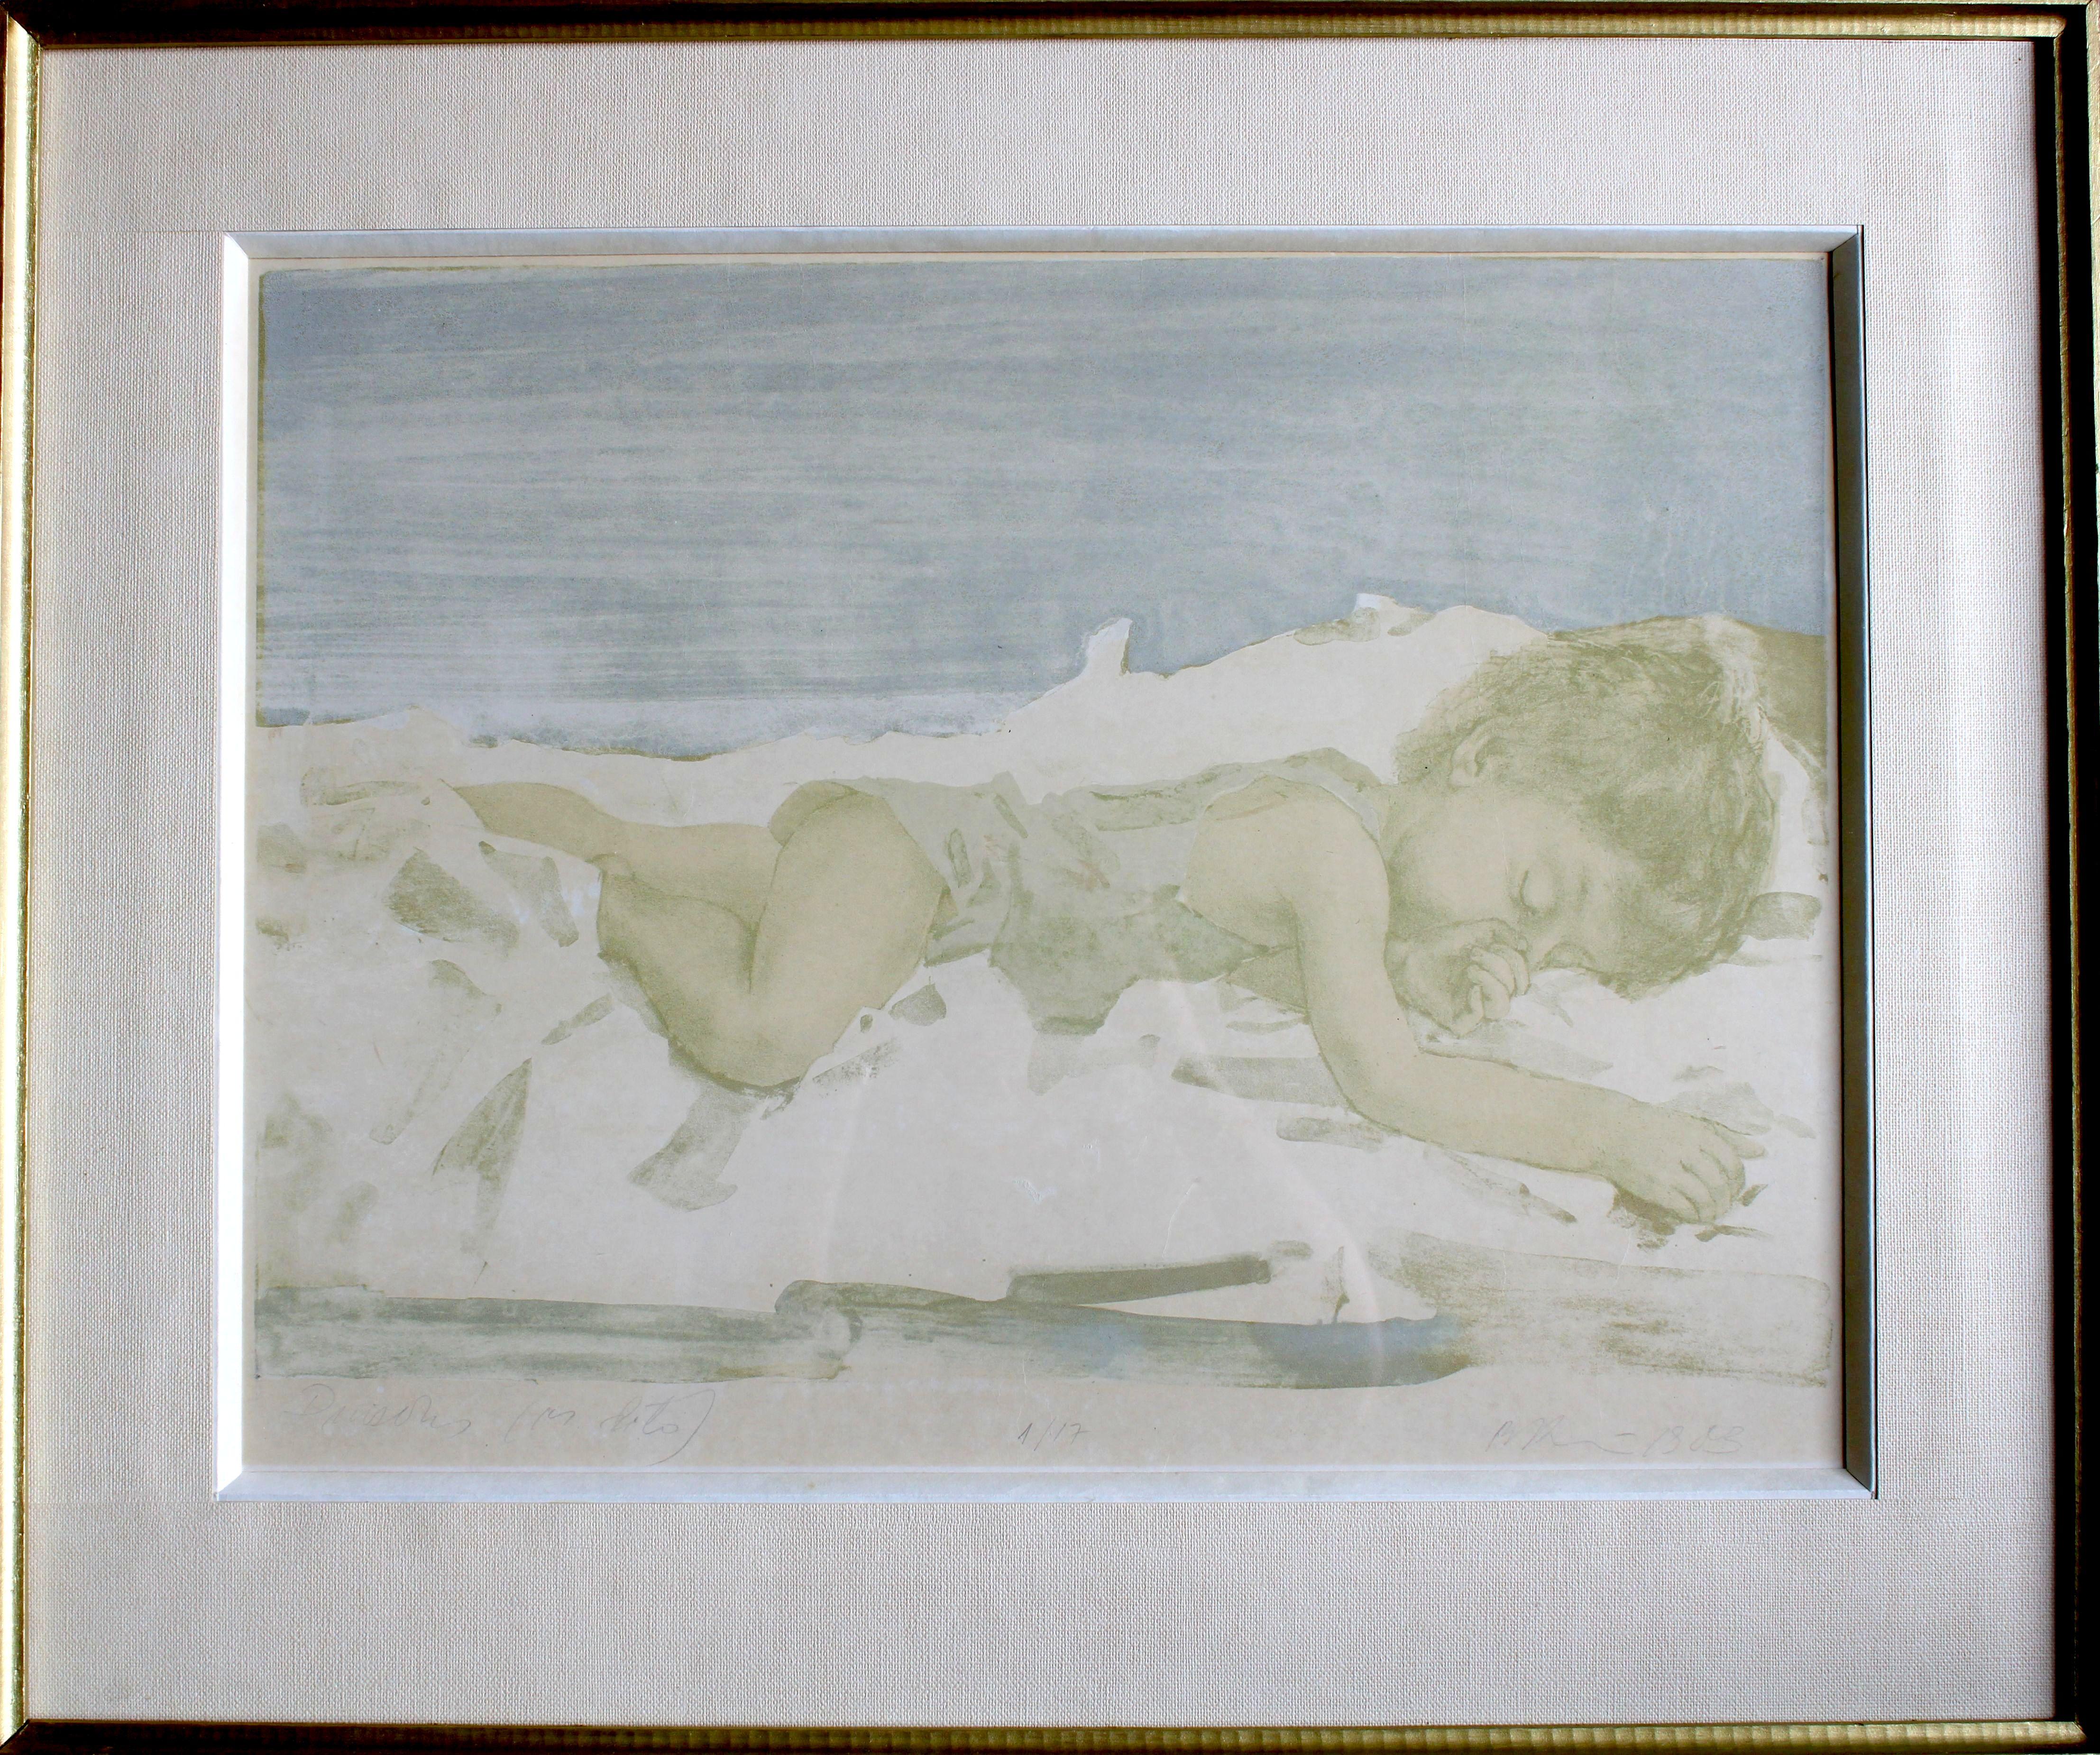 The boy  1/17. 1983. Paper, lithography, 39x51 cm - Print by Banuta Ancane